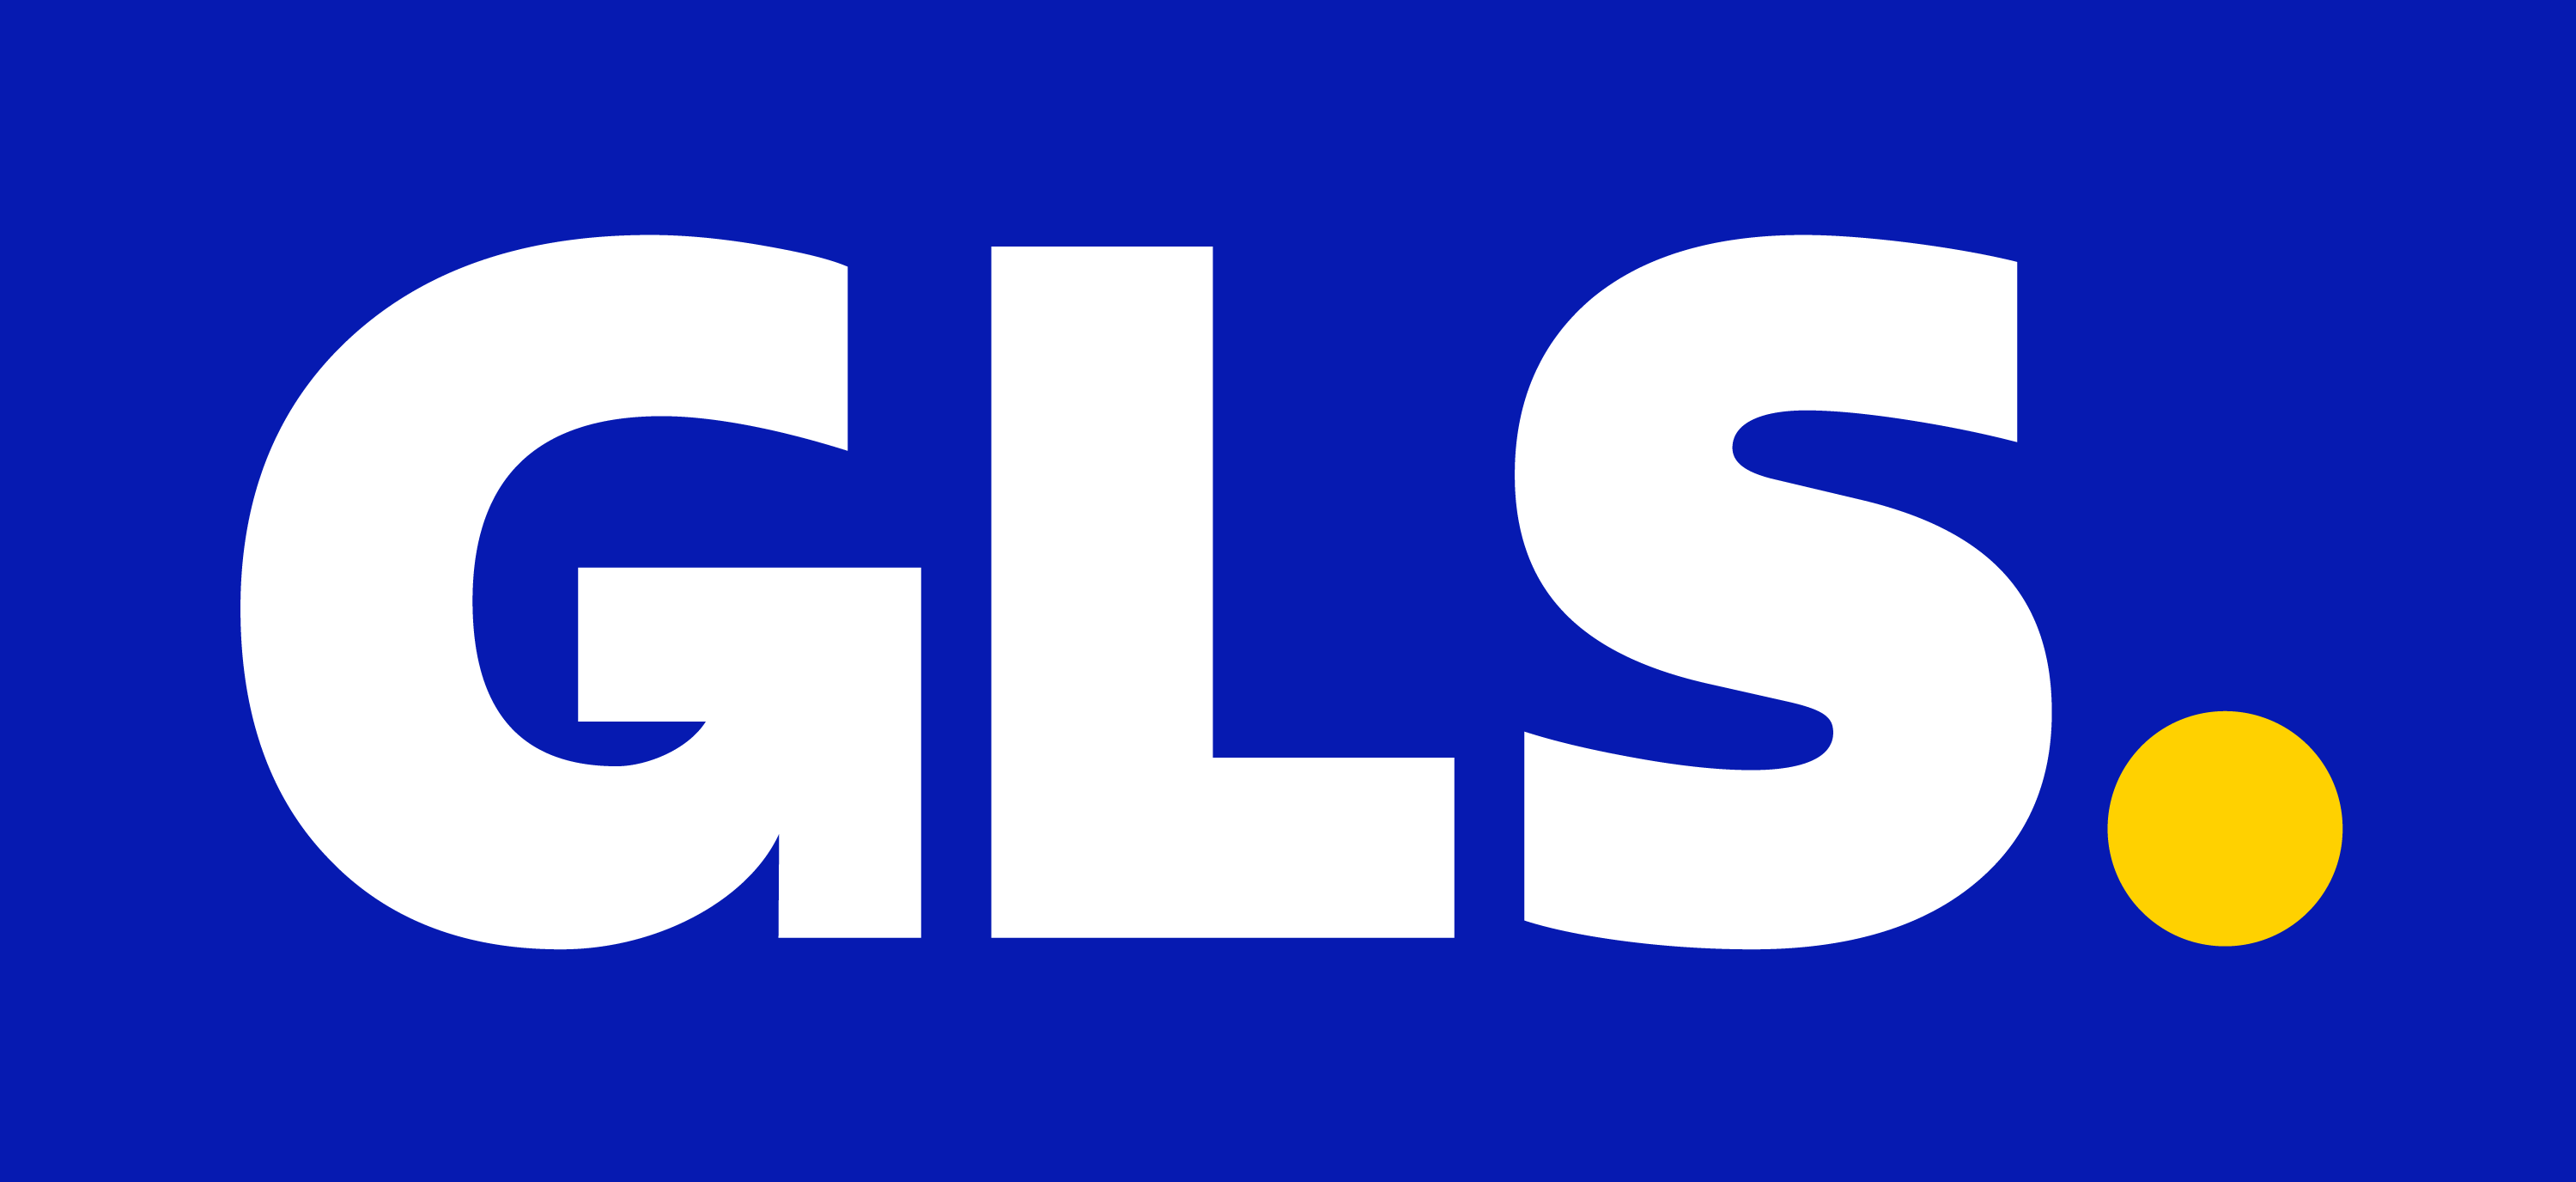 Billede af blå hvid GLS logo